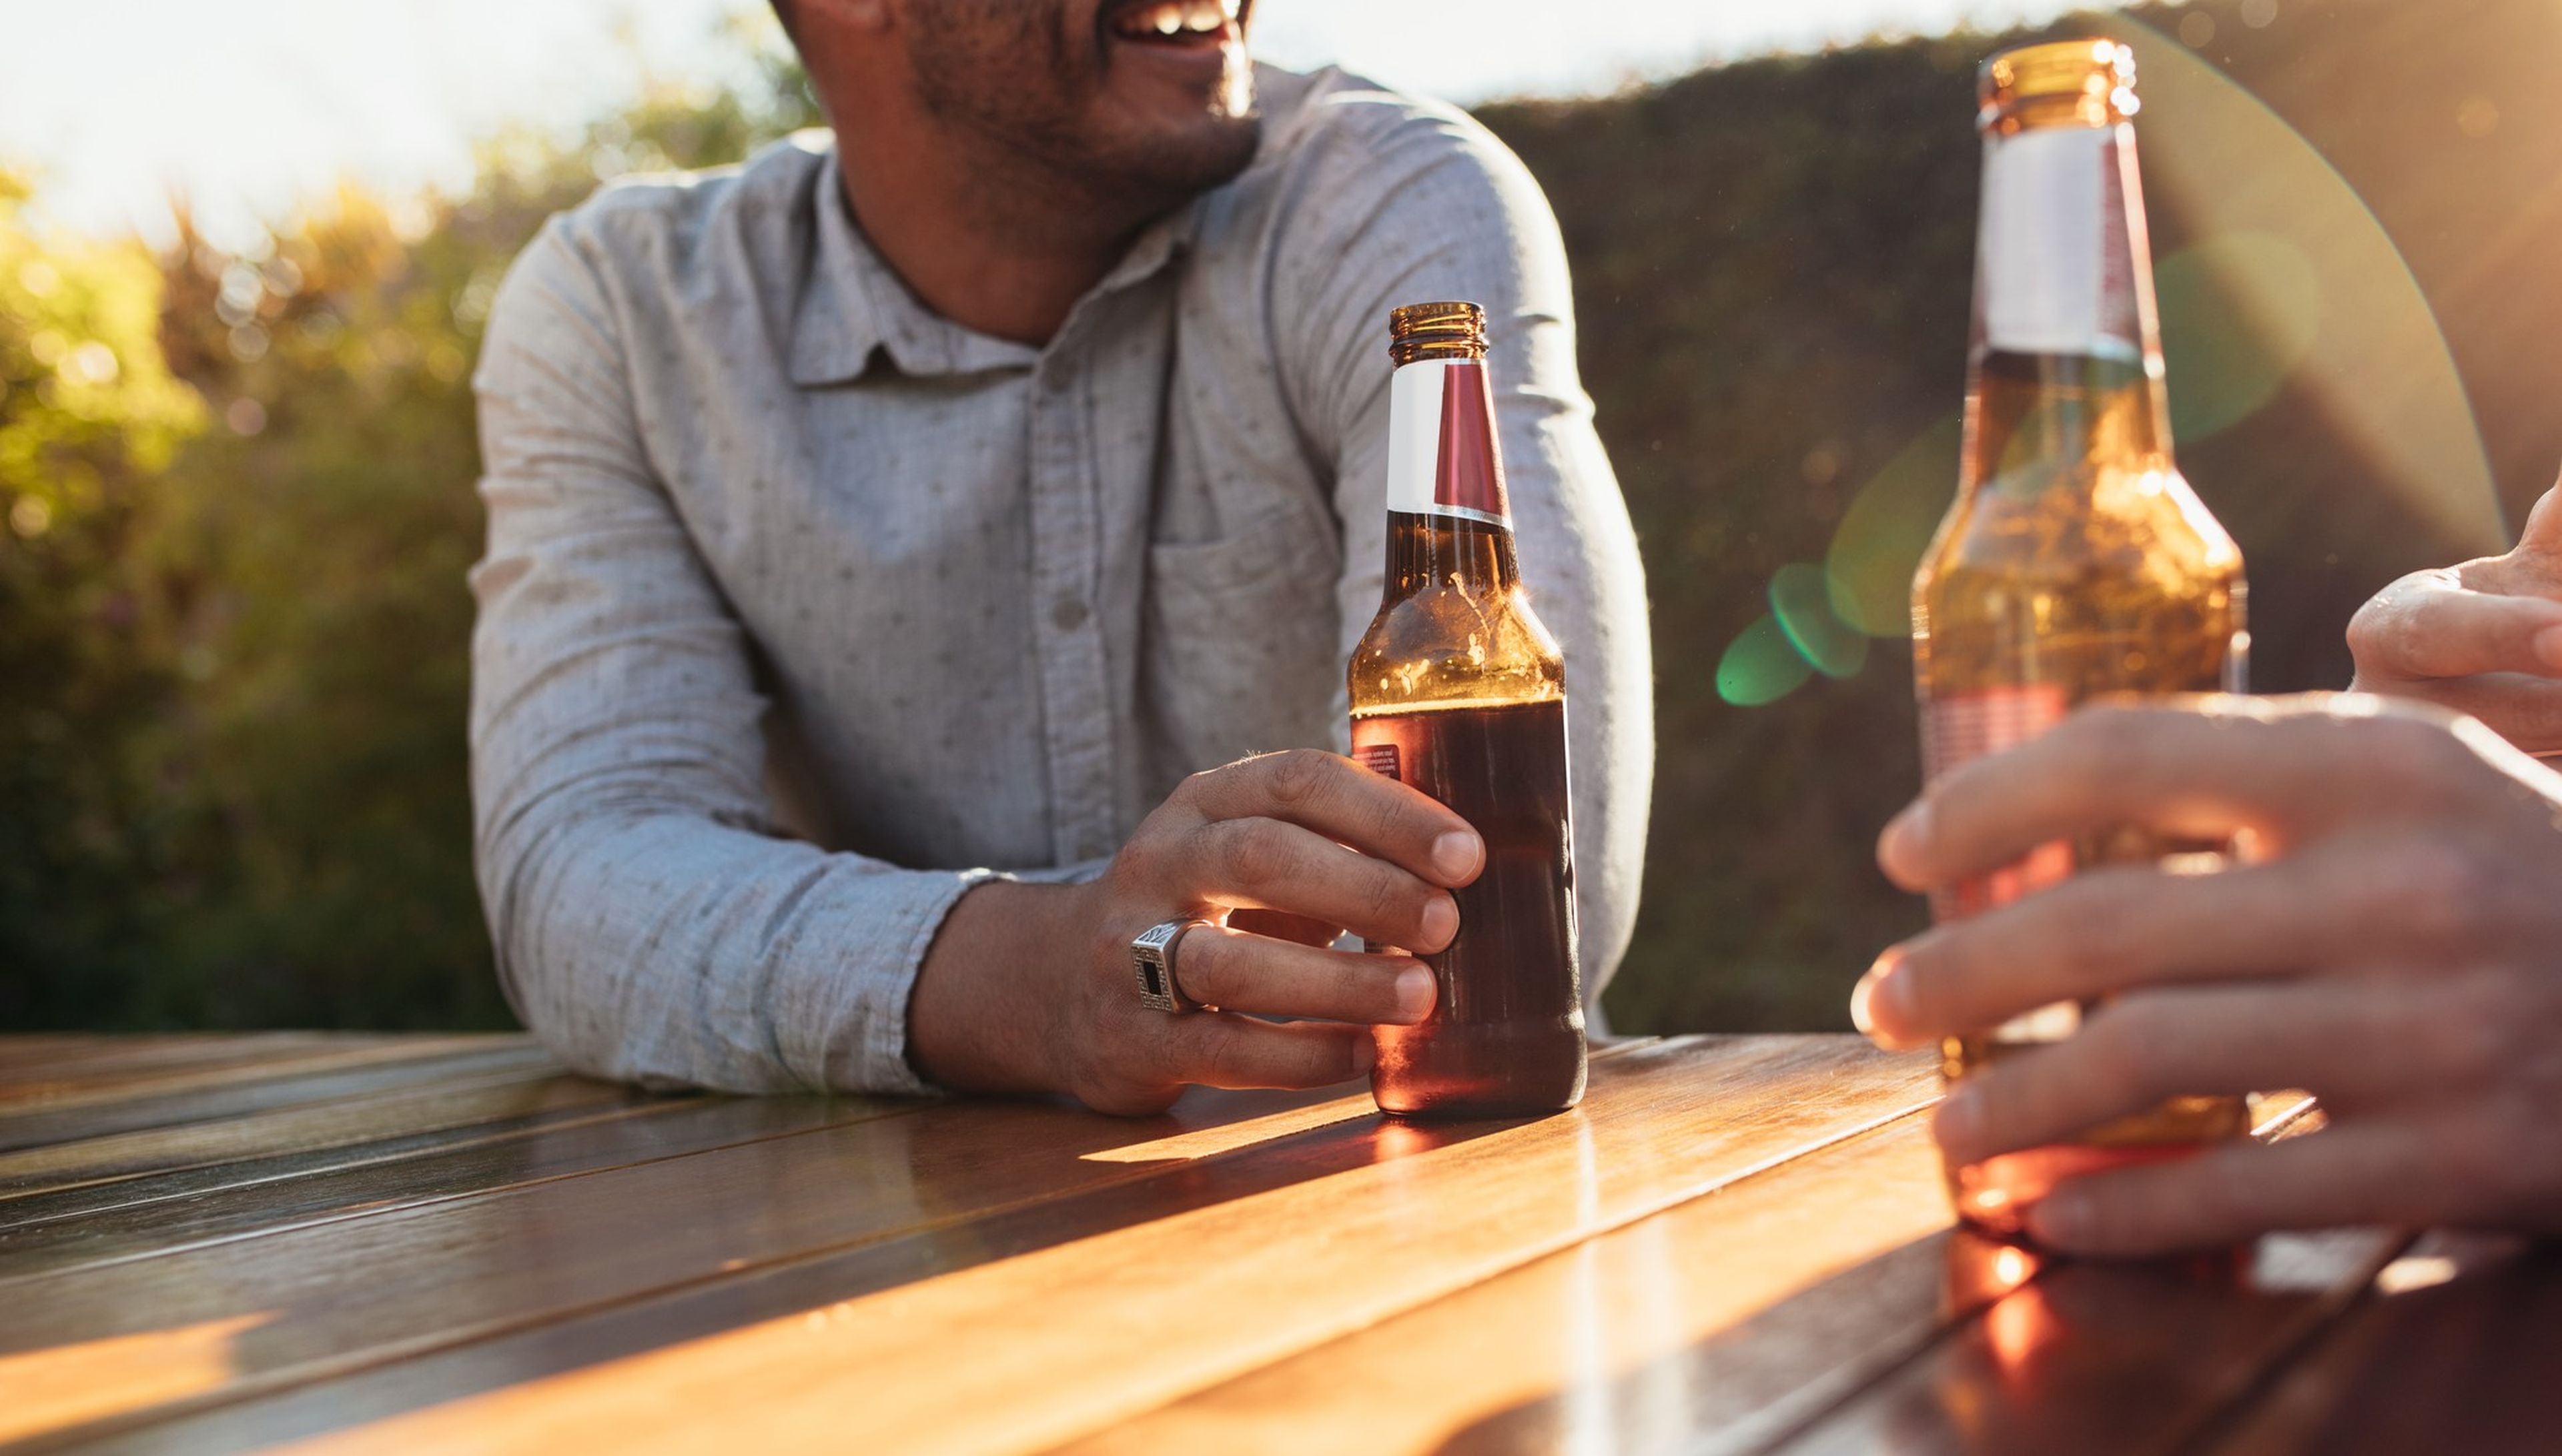 Beber una cerveza al día aporta un importante beneficio, según un estudio médico